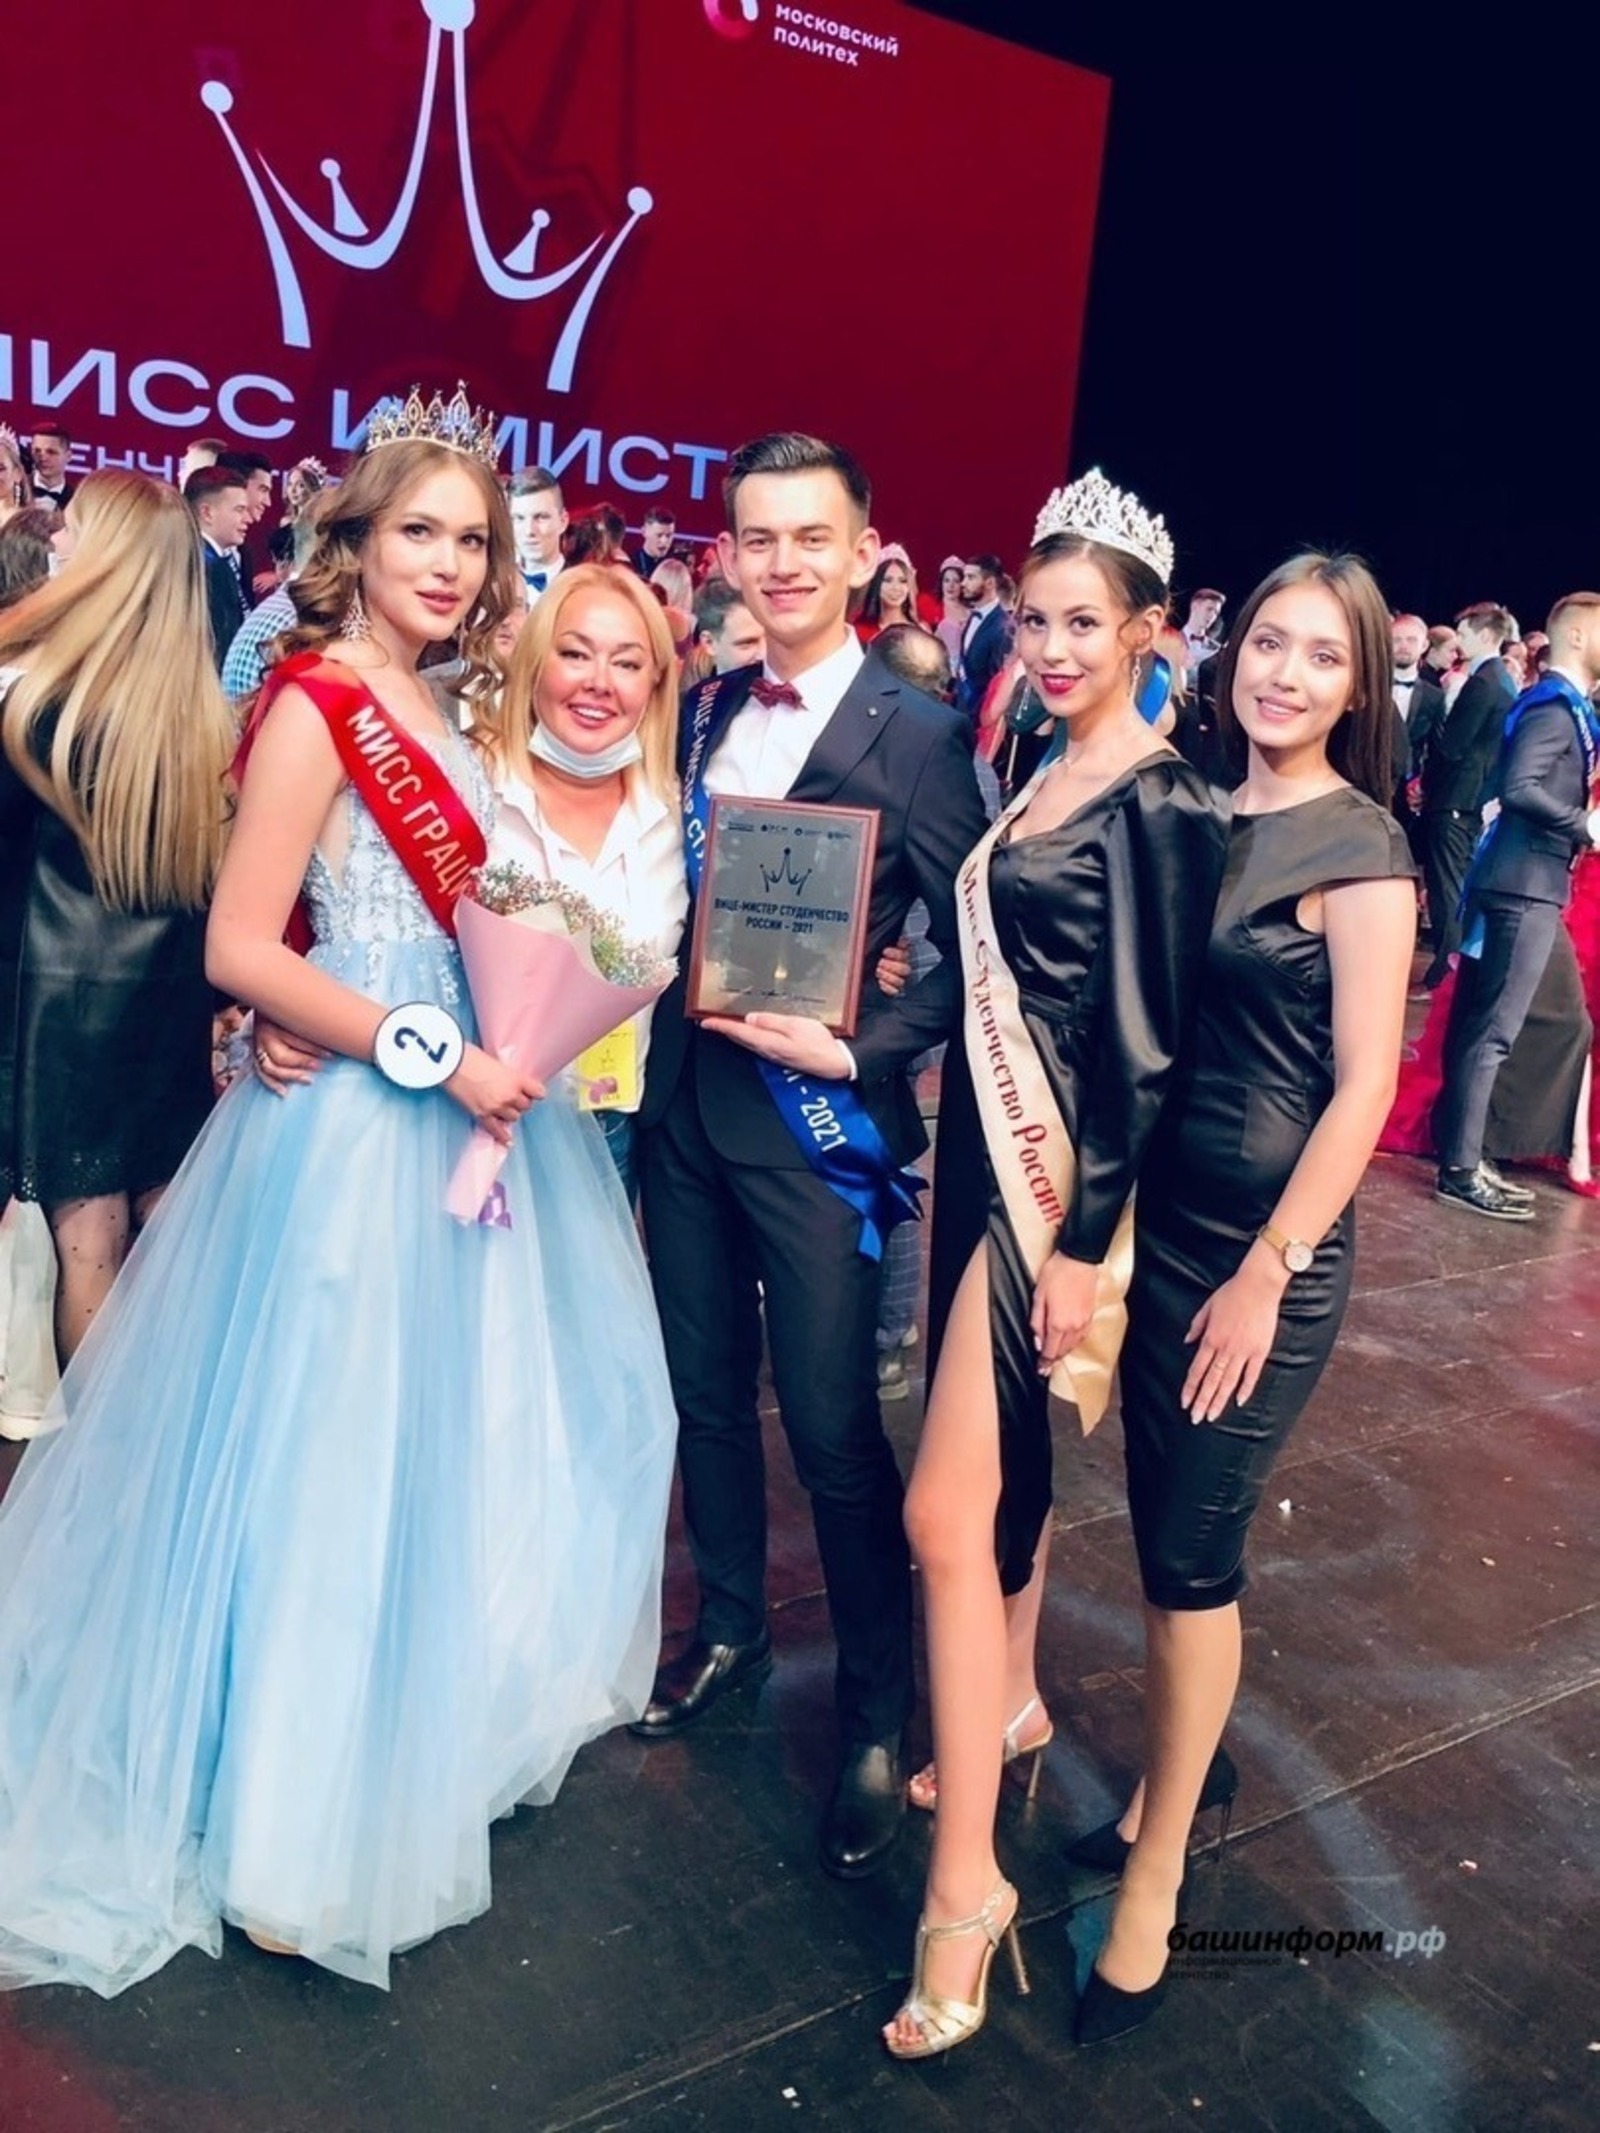 Республика студенттары Мәскәүҙә үткән конкурста еңеү яулаған